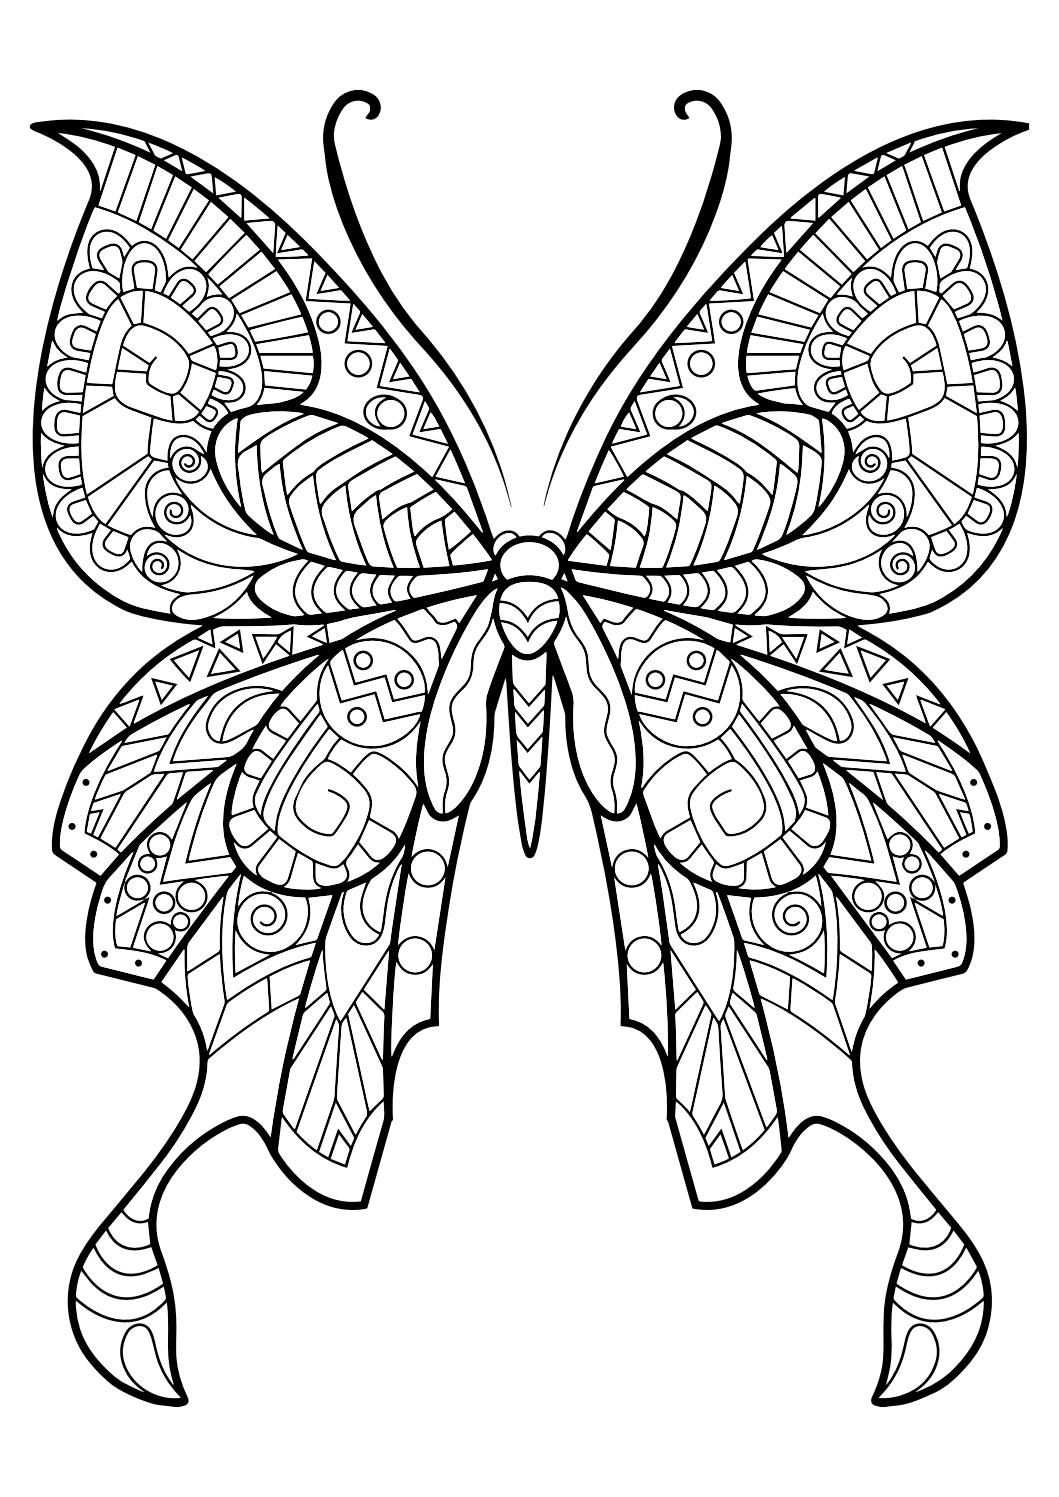 Tranh tô màu con bướm xinh đẹp, nhẹ nhàng dành tặng cho bé yêu